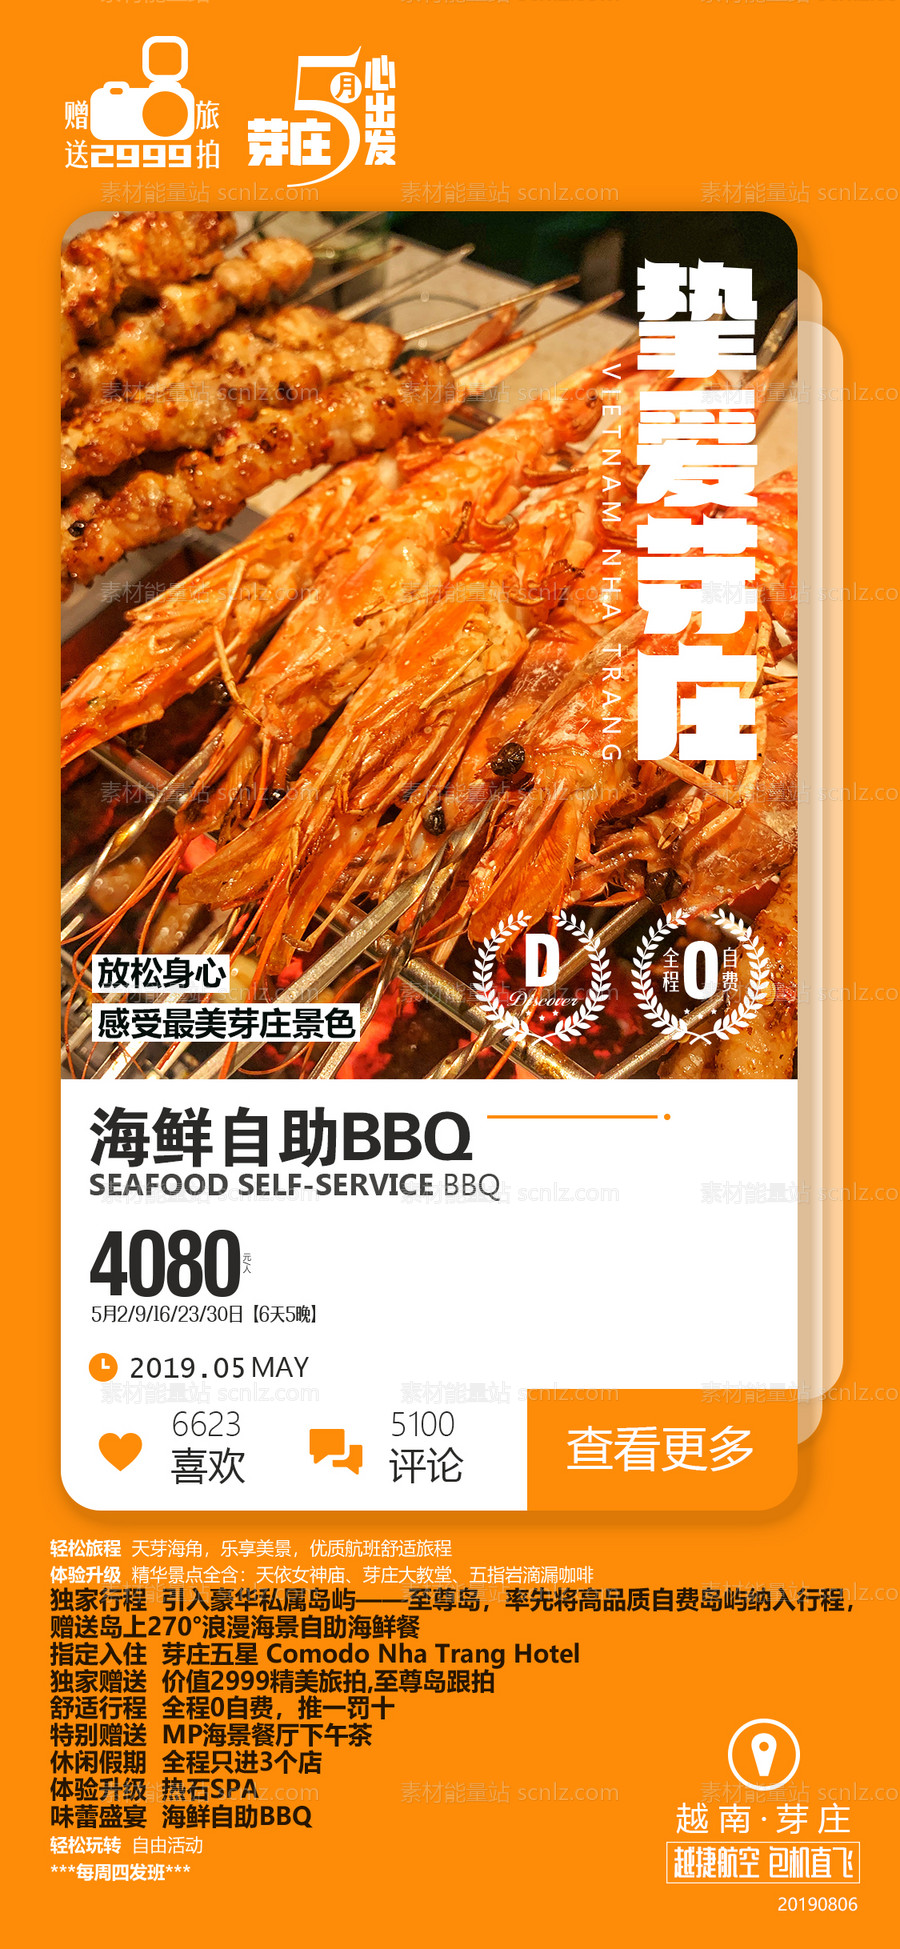 素材能量站-大虾海鲜烧烤芽庄旅游广告